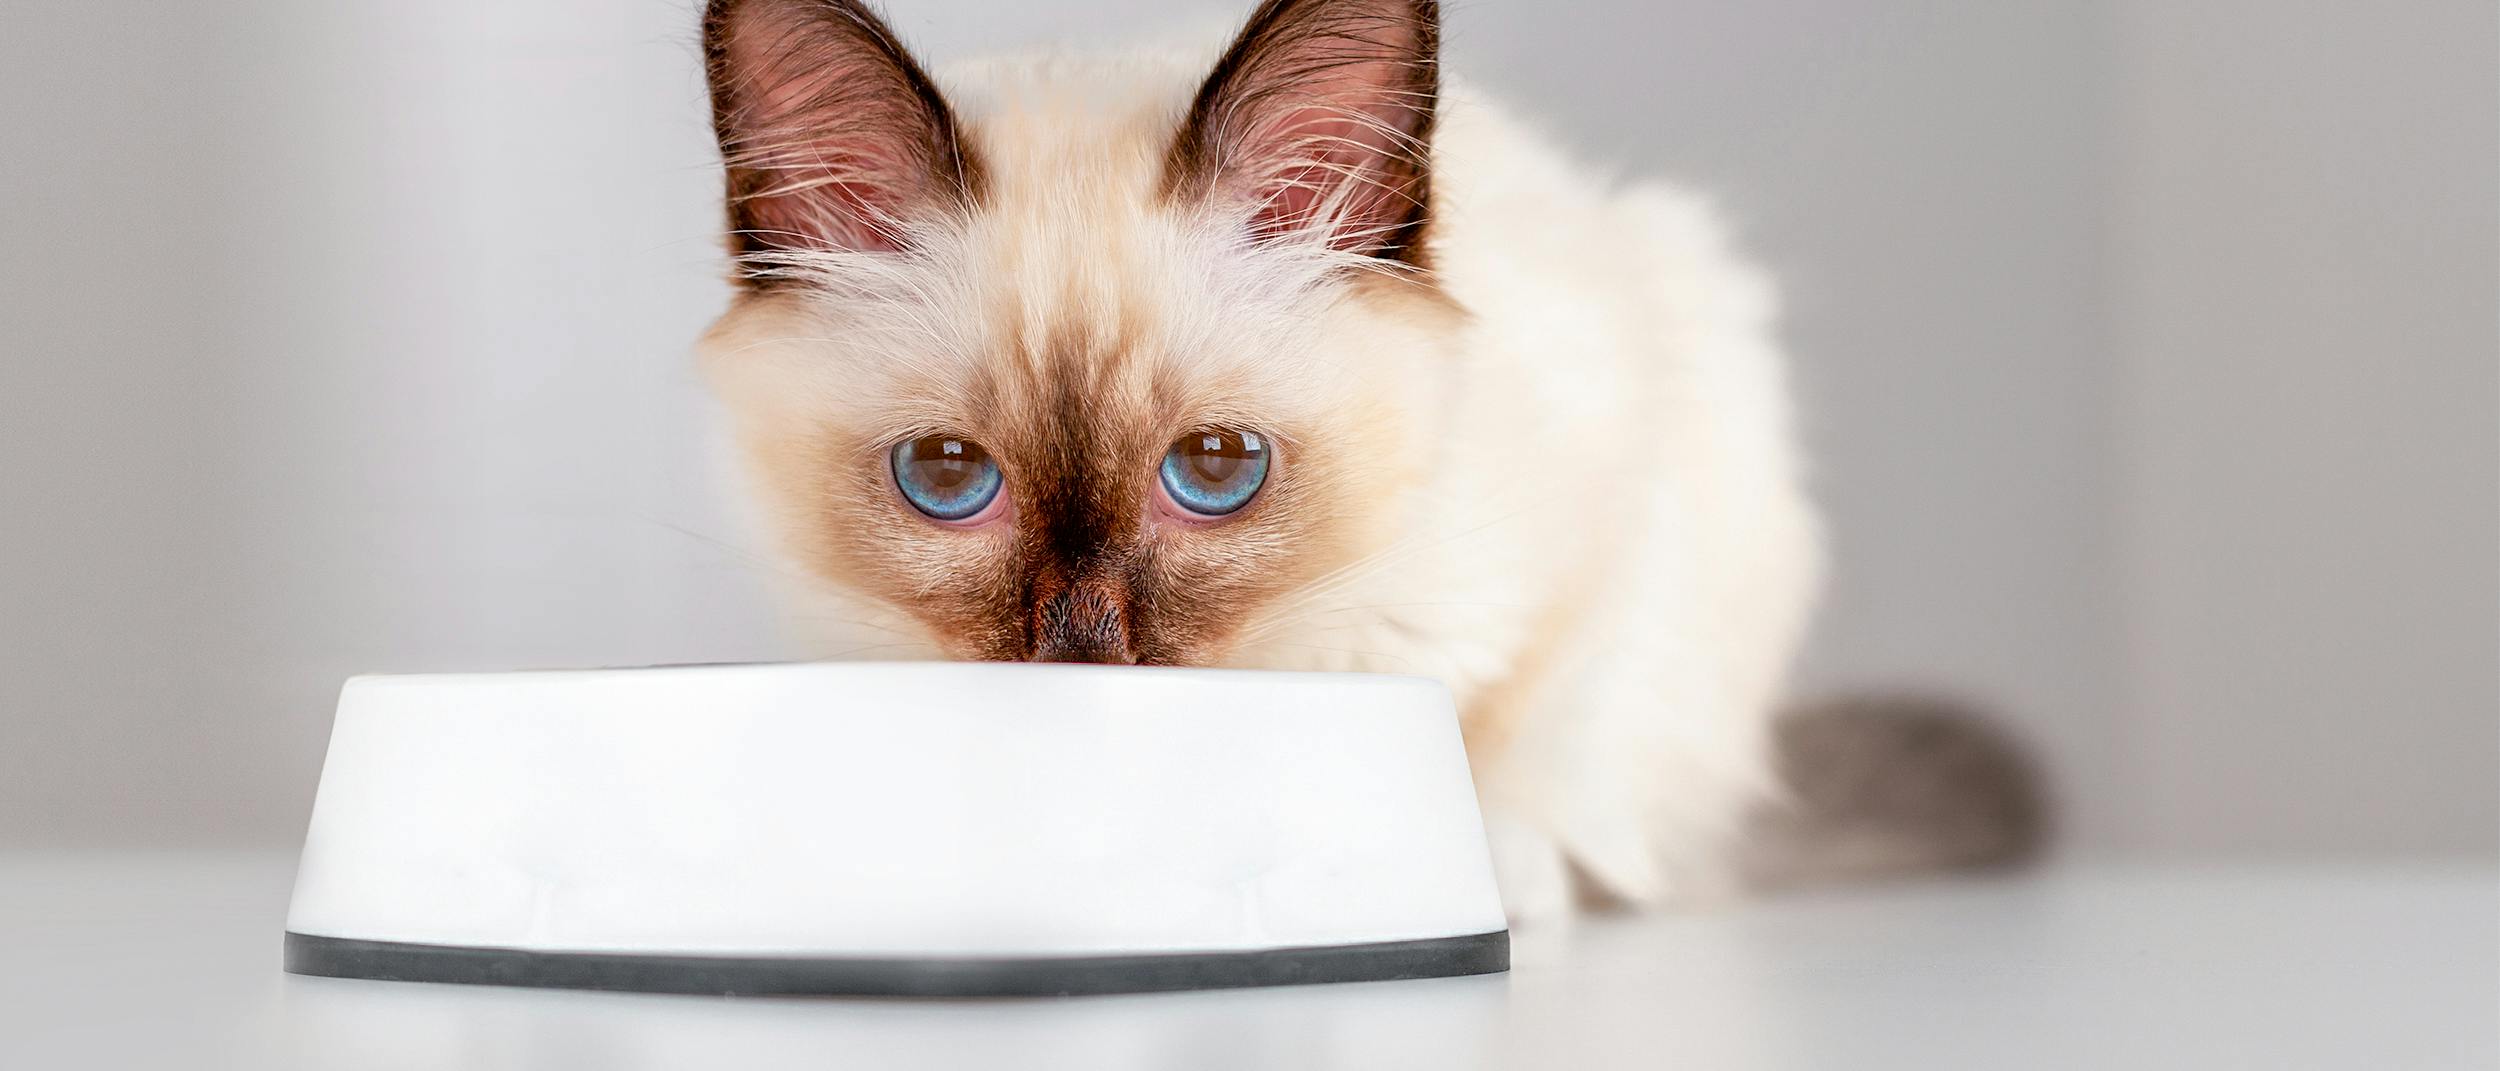 Πόσο μπορεί να μείνει μια γάτα χωρίς φαγητό; Γιατί πρέπει να το γνωρίζετε;